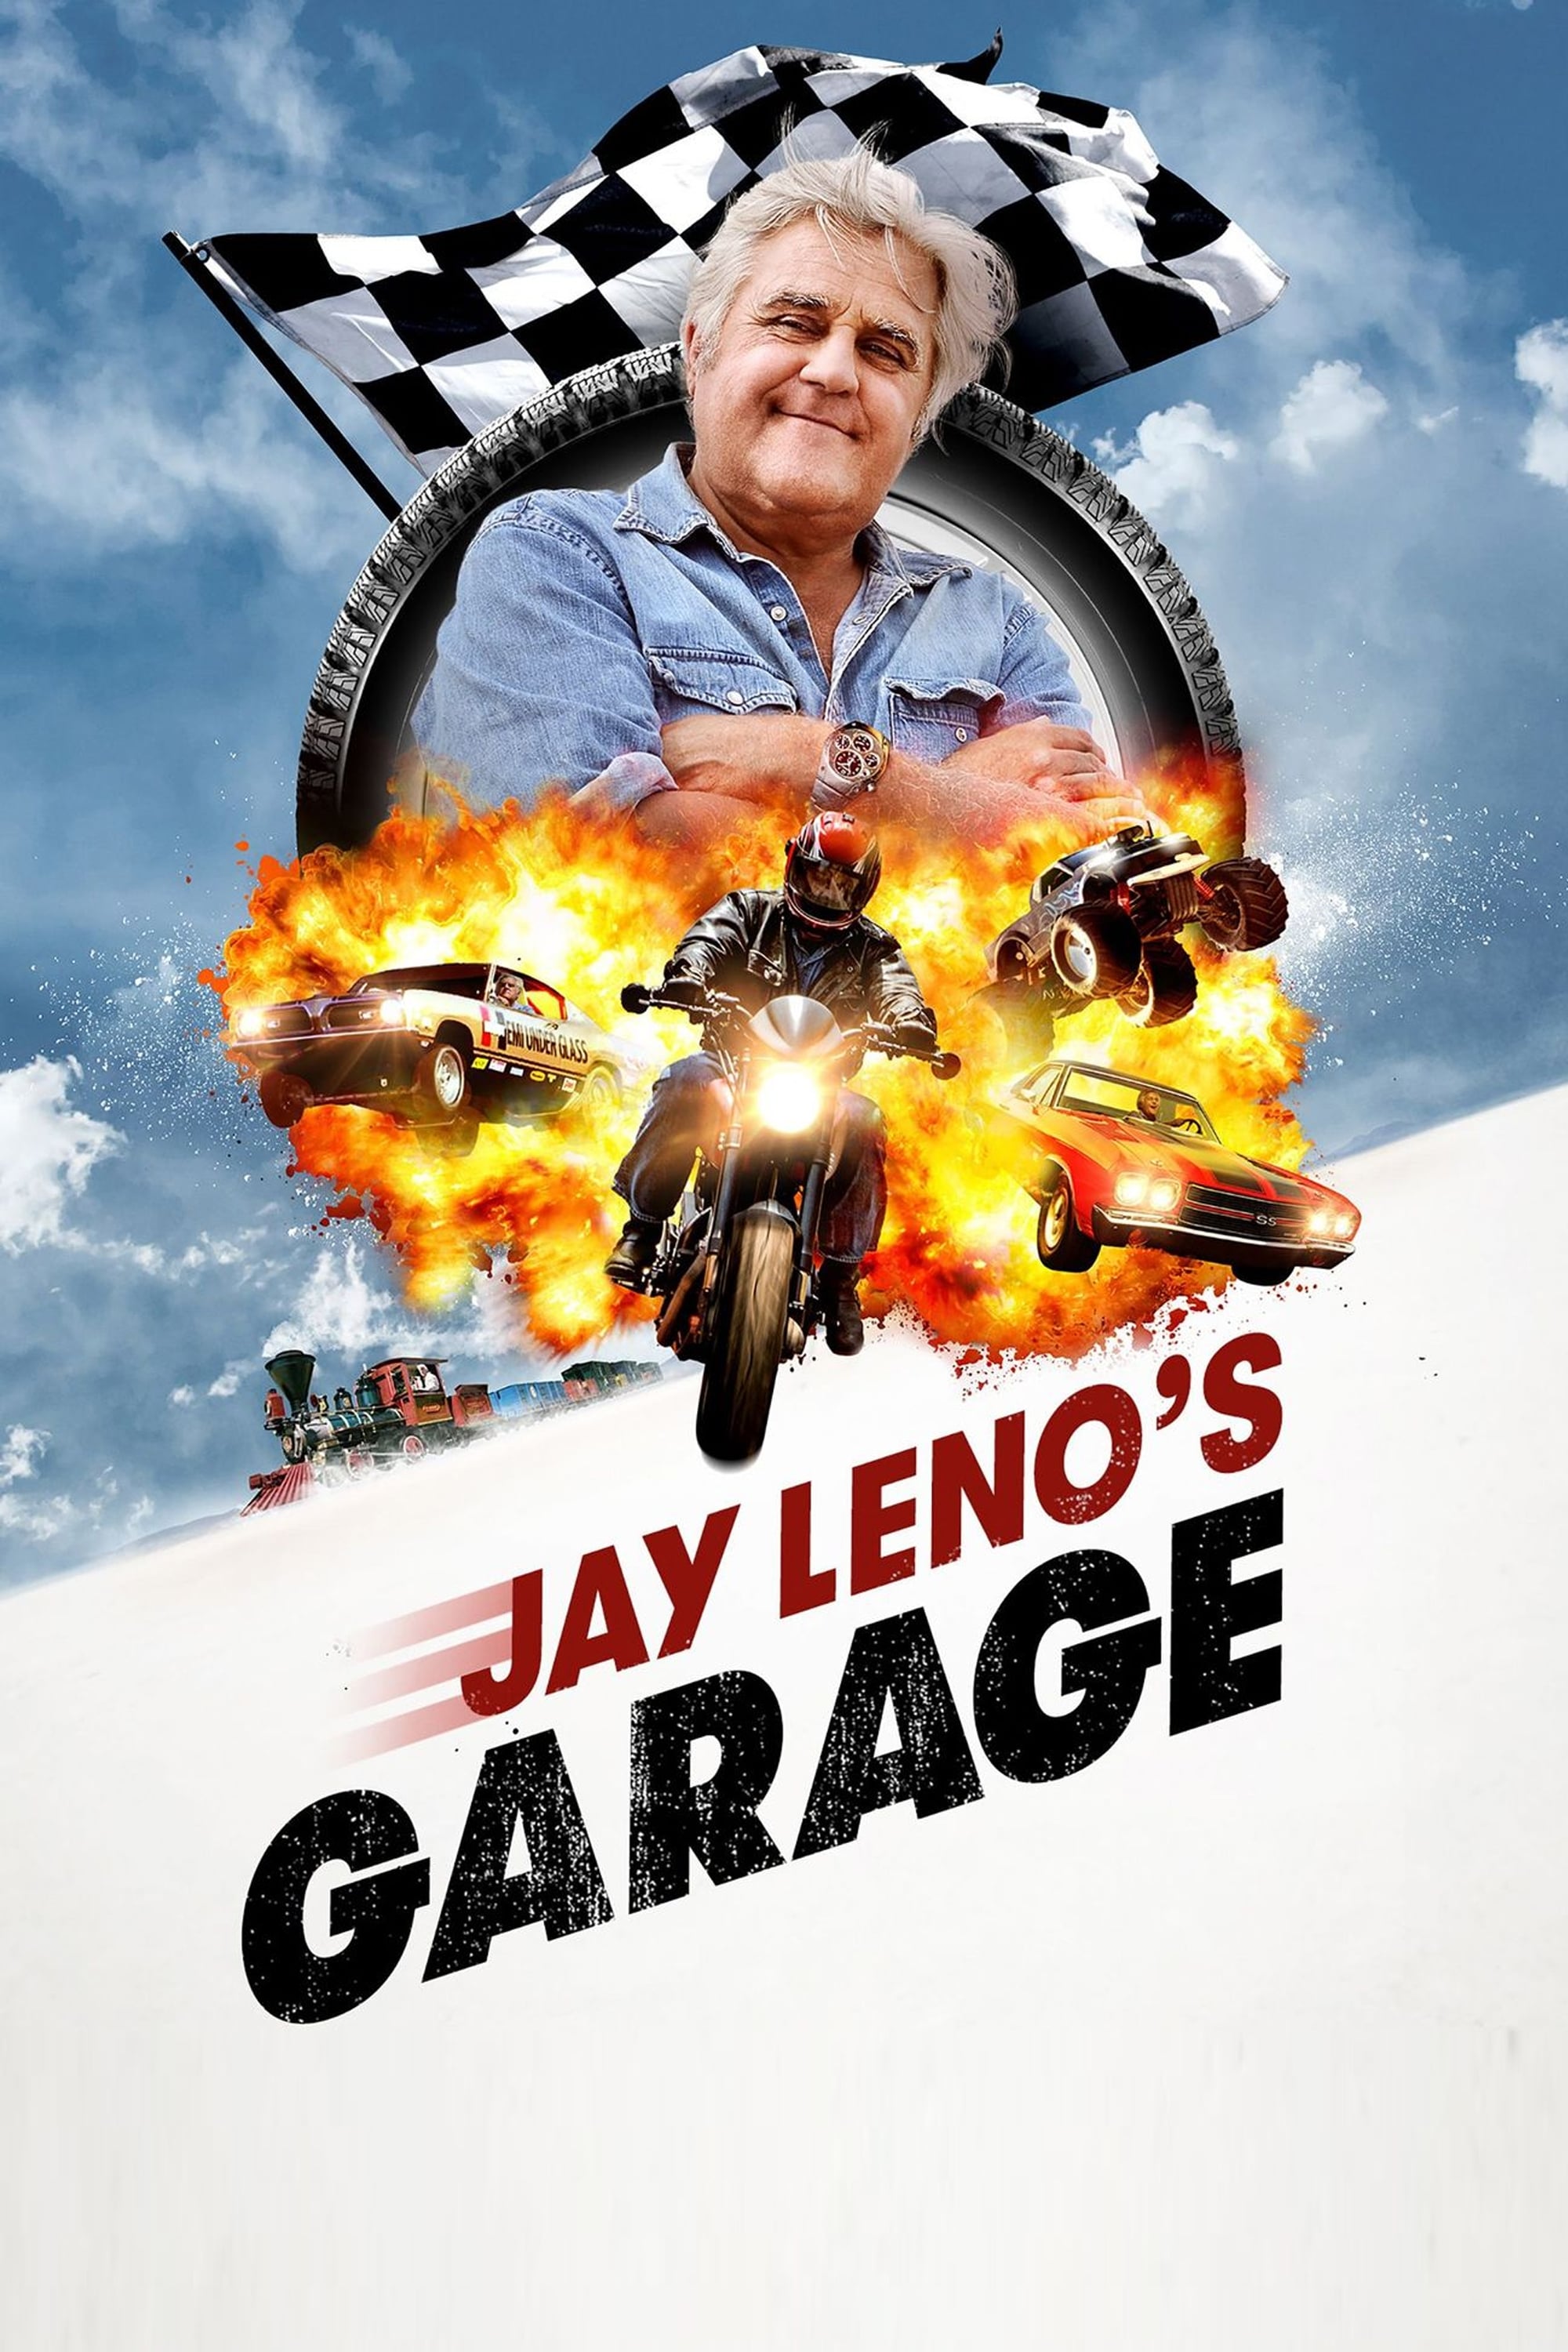 El Garaje de Jay Leno